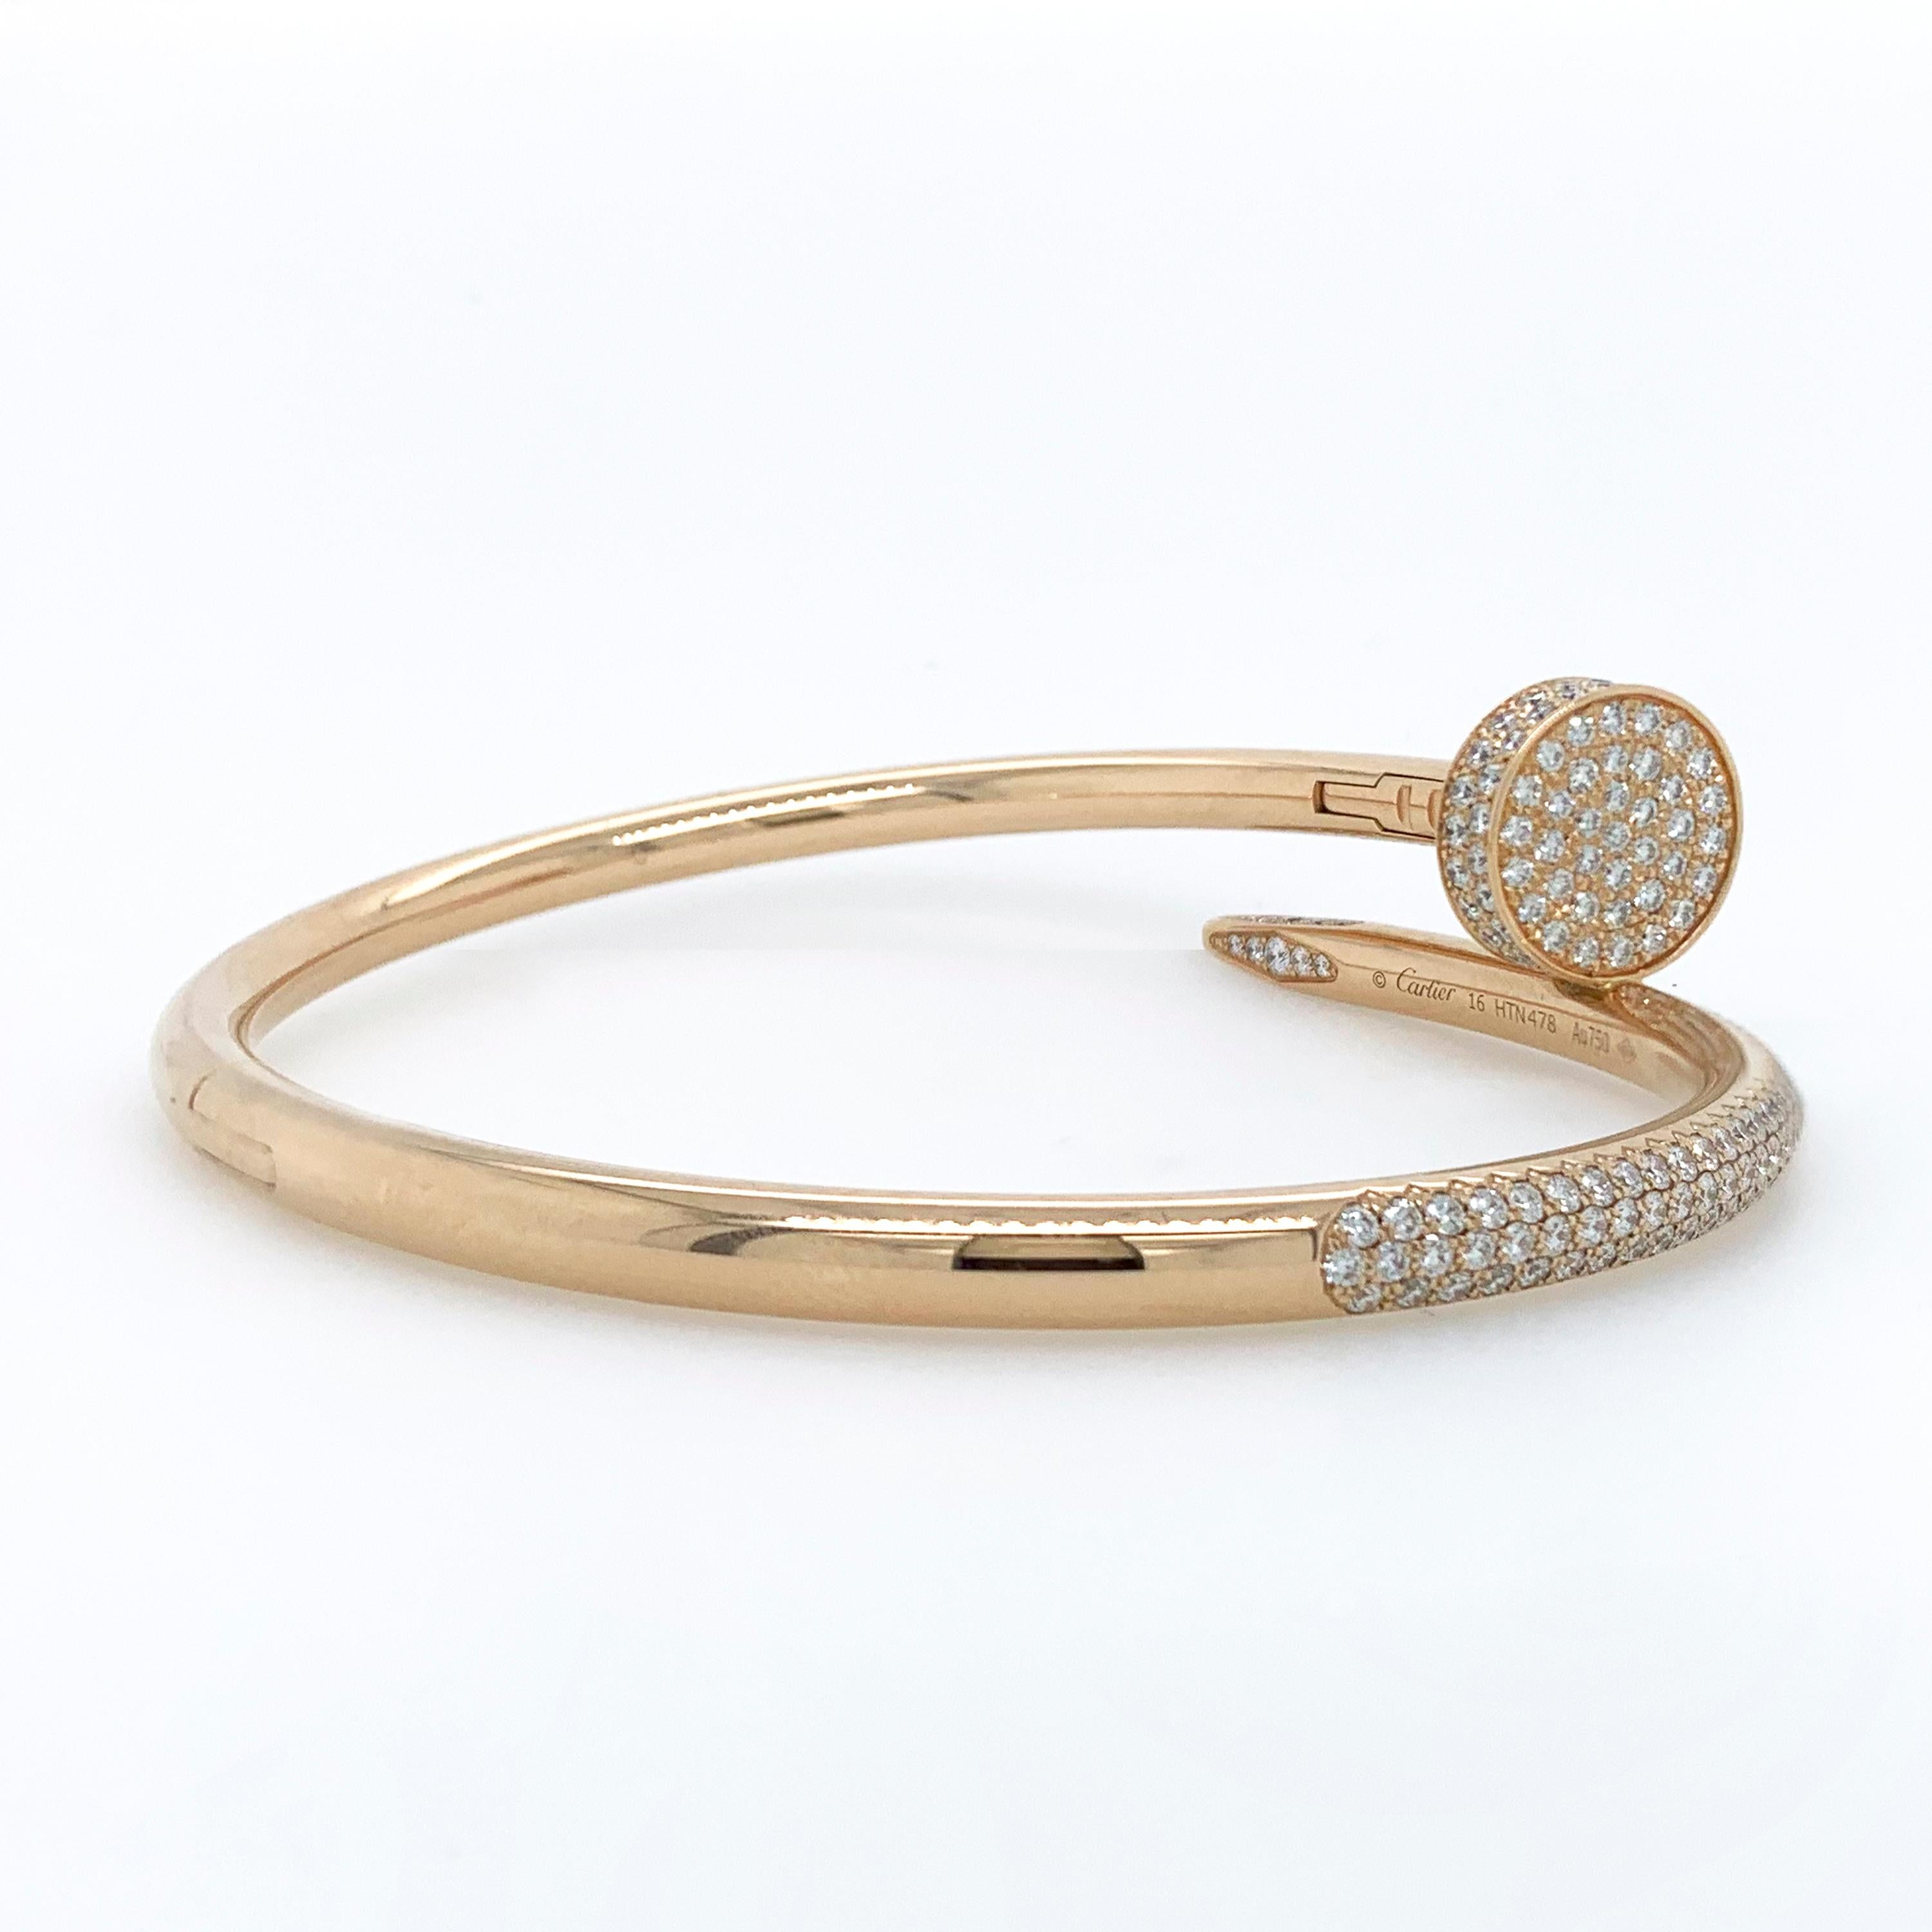 Bracelet à clous en diamants Juste Un Clou de Cartier en or rose 18k, accompagné de son écrin Cartier.

Ce bracelet comporte 374 diamants ronds de taille brillant sertis en pavé totalisant environ 2,26 carats de couleur F-G et de pureté VS+. 